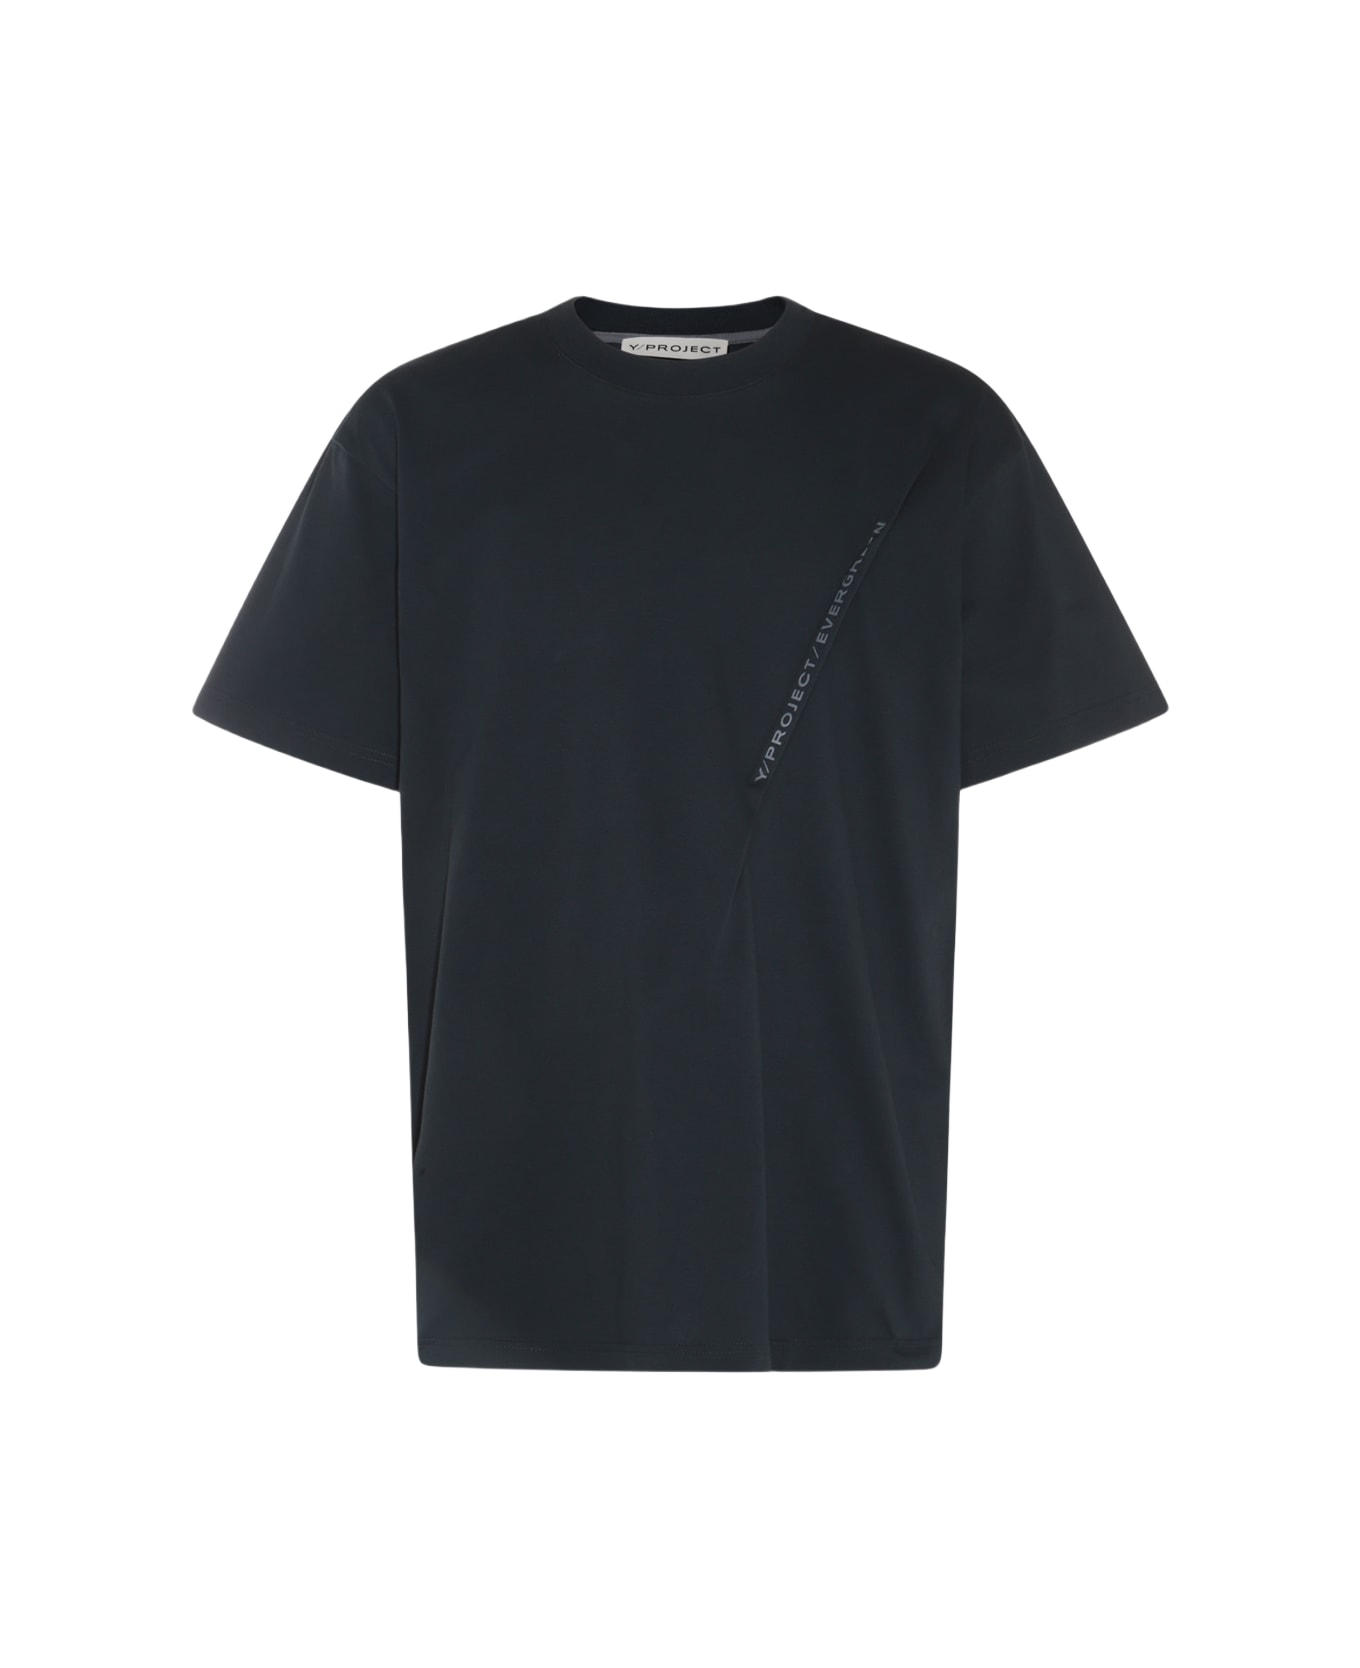 Y/Project Black Cotton T-shirt